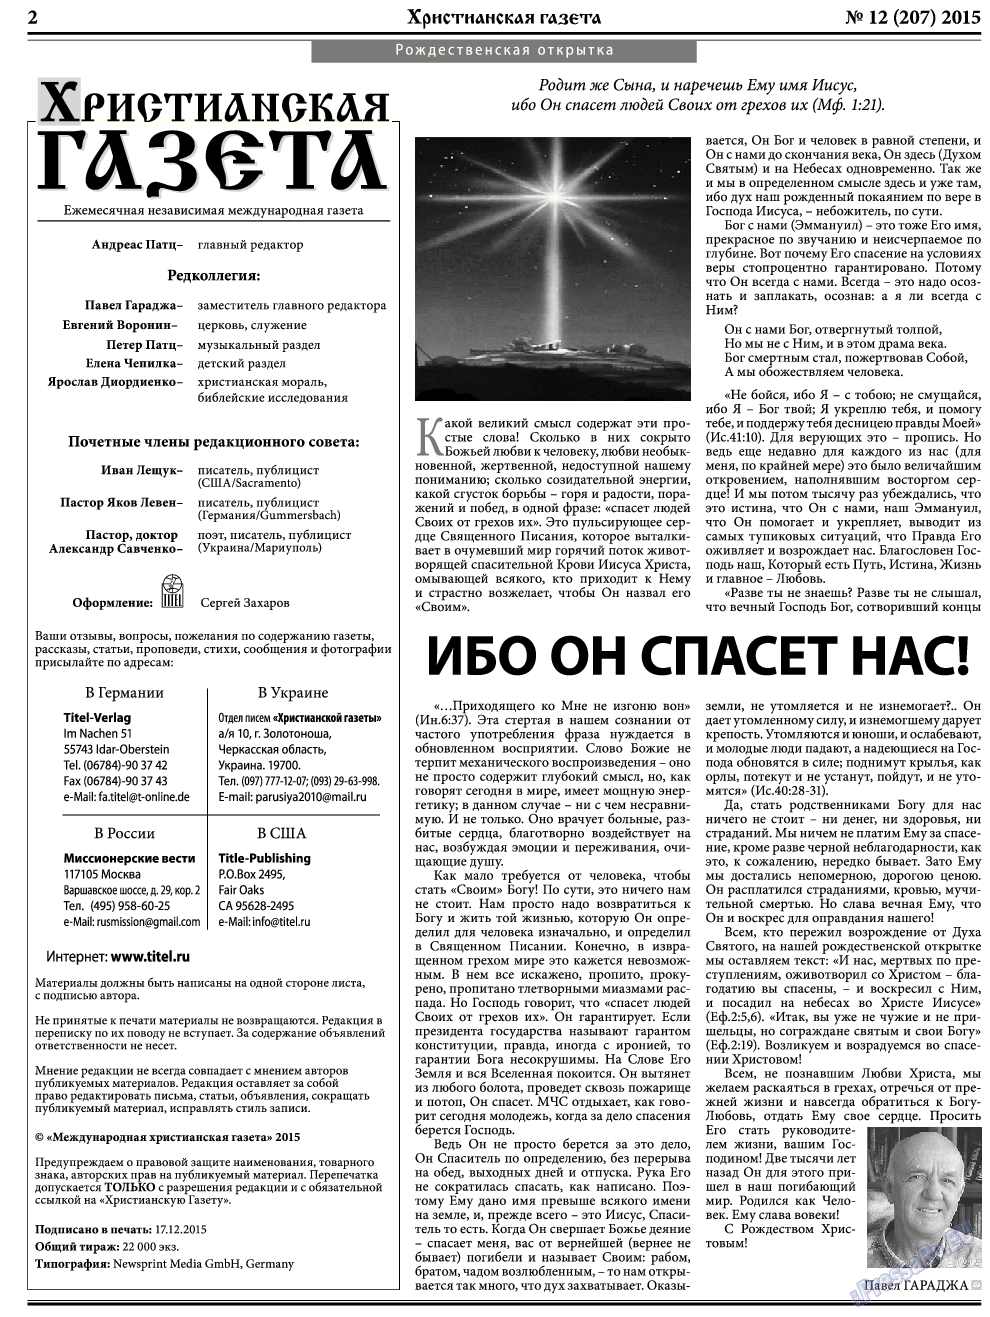 Христианская газета, газета. 2015 №12 стр.2